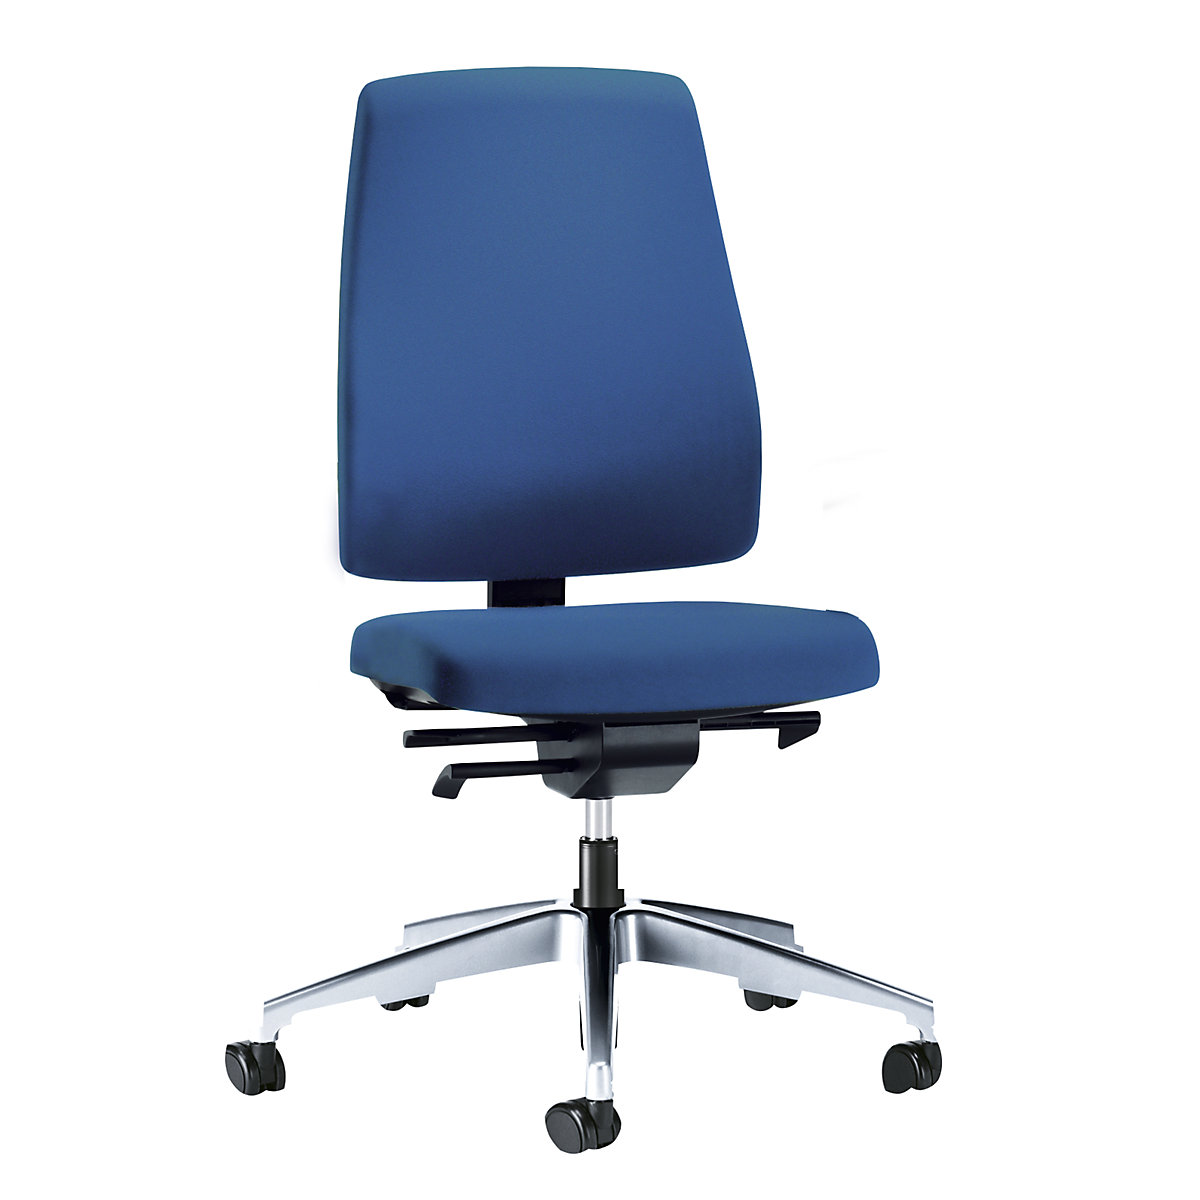 Bürodrehstuhl GOAL, Rückenlehnenhöhe 530 mm interstuhl, Gestell poliert, mit weichen Rollen, enzianblau, Sitztiefe 410 – 460 mm